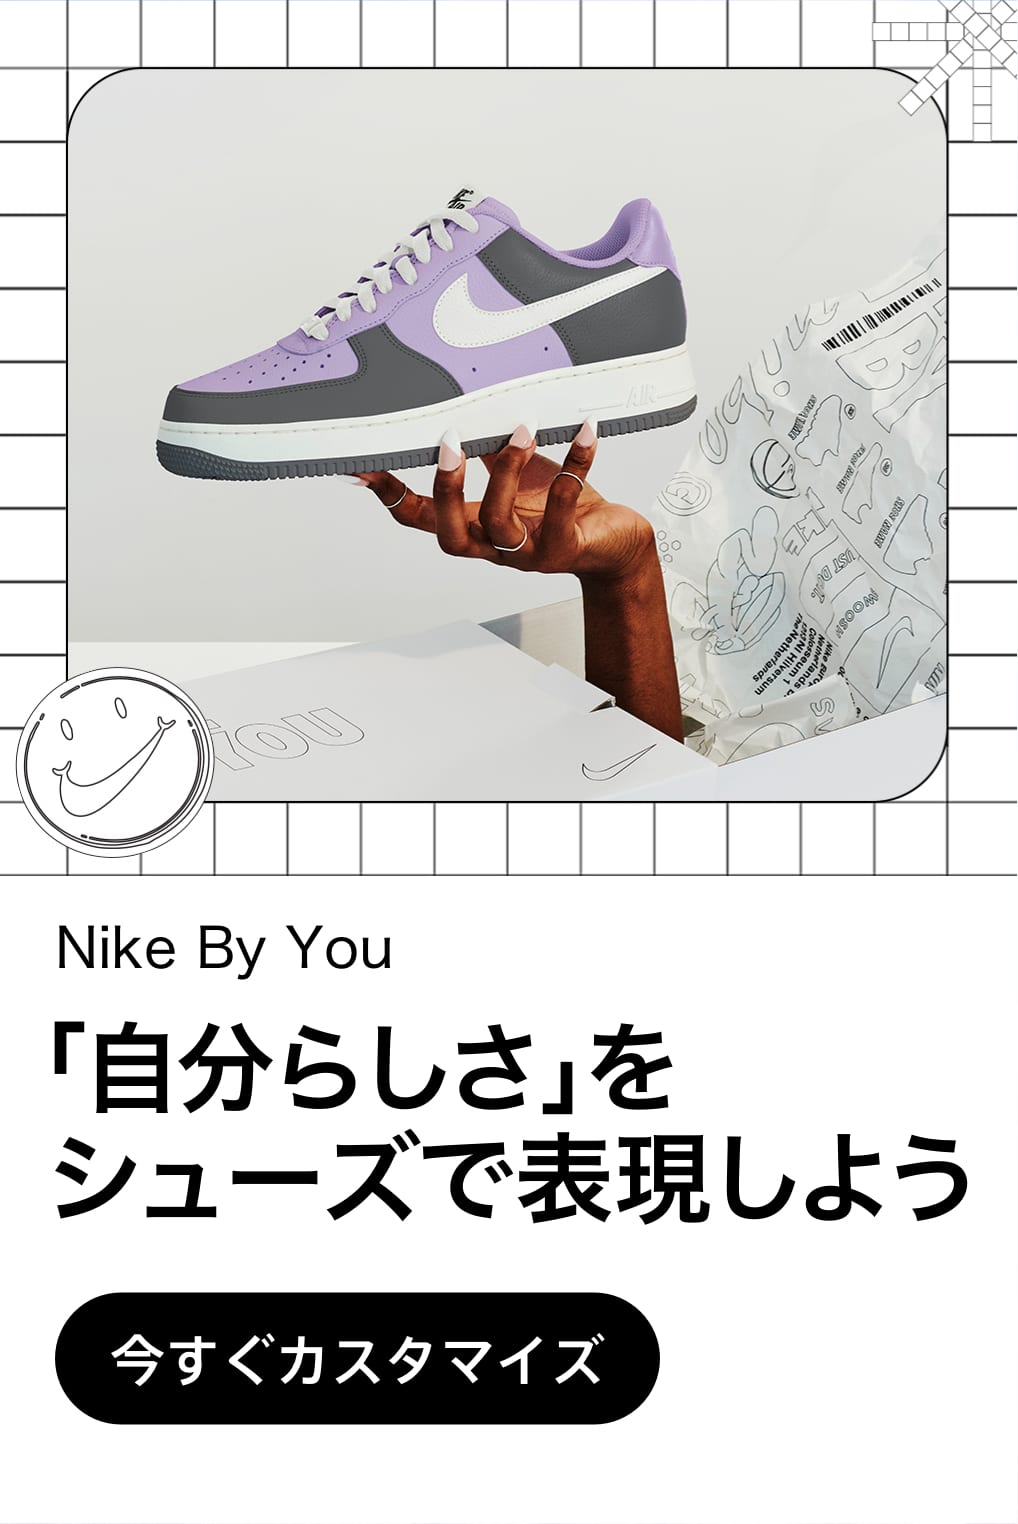 Nike公式 メンズ スニーカー ナイキ公式通販